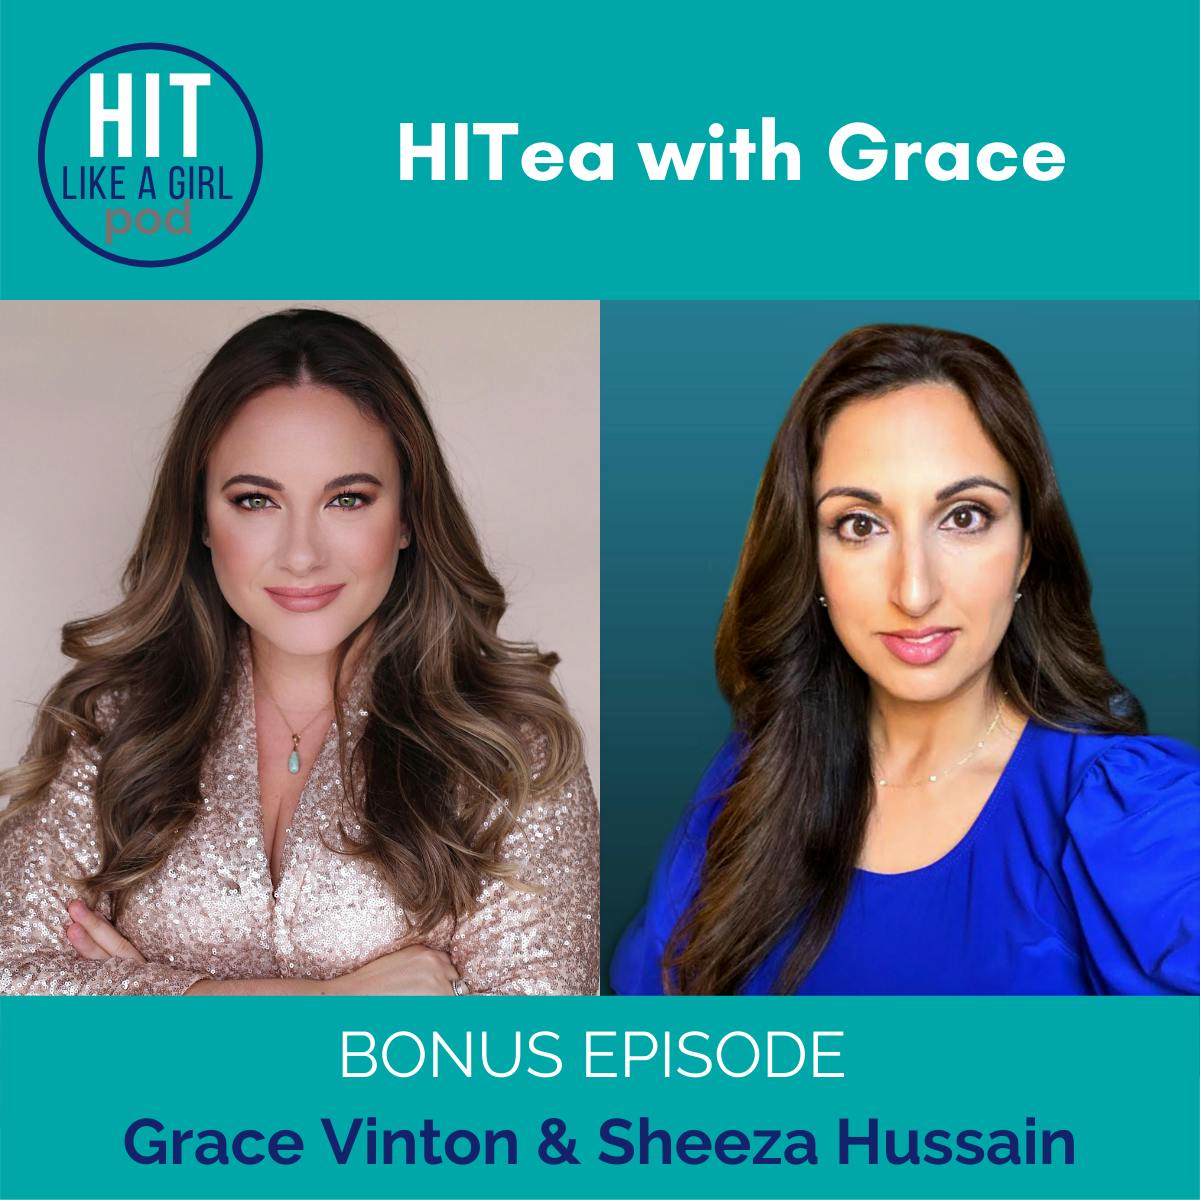 HITea with Grace: Grace Vinton & Sheeza Hussain talk personalized predictive care